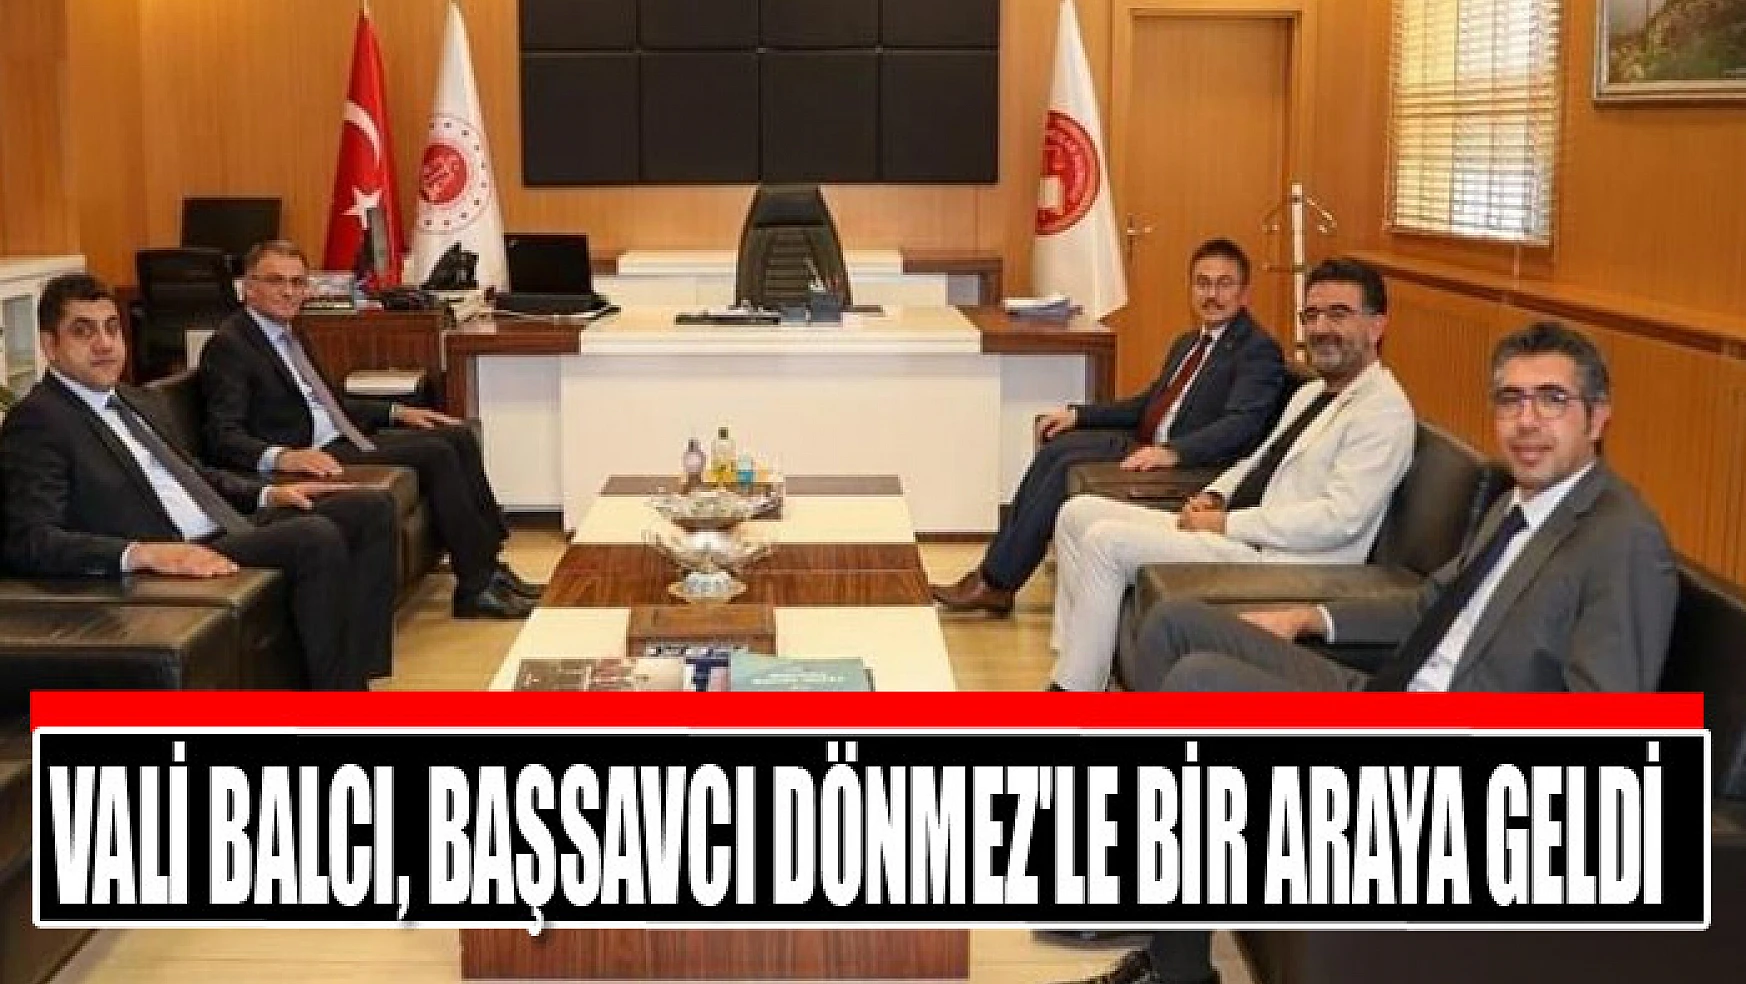 Vali Balcı, Cumhuriyet Başsavcısı Dönmez'le bir araya geldi